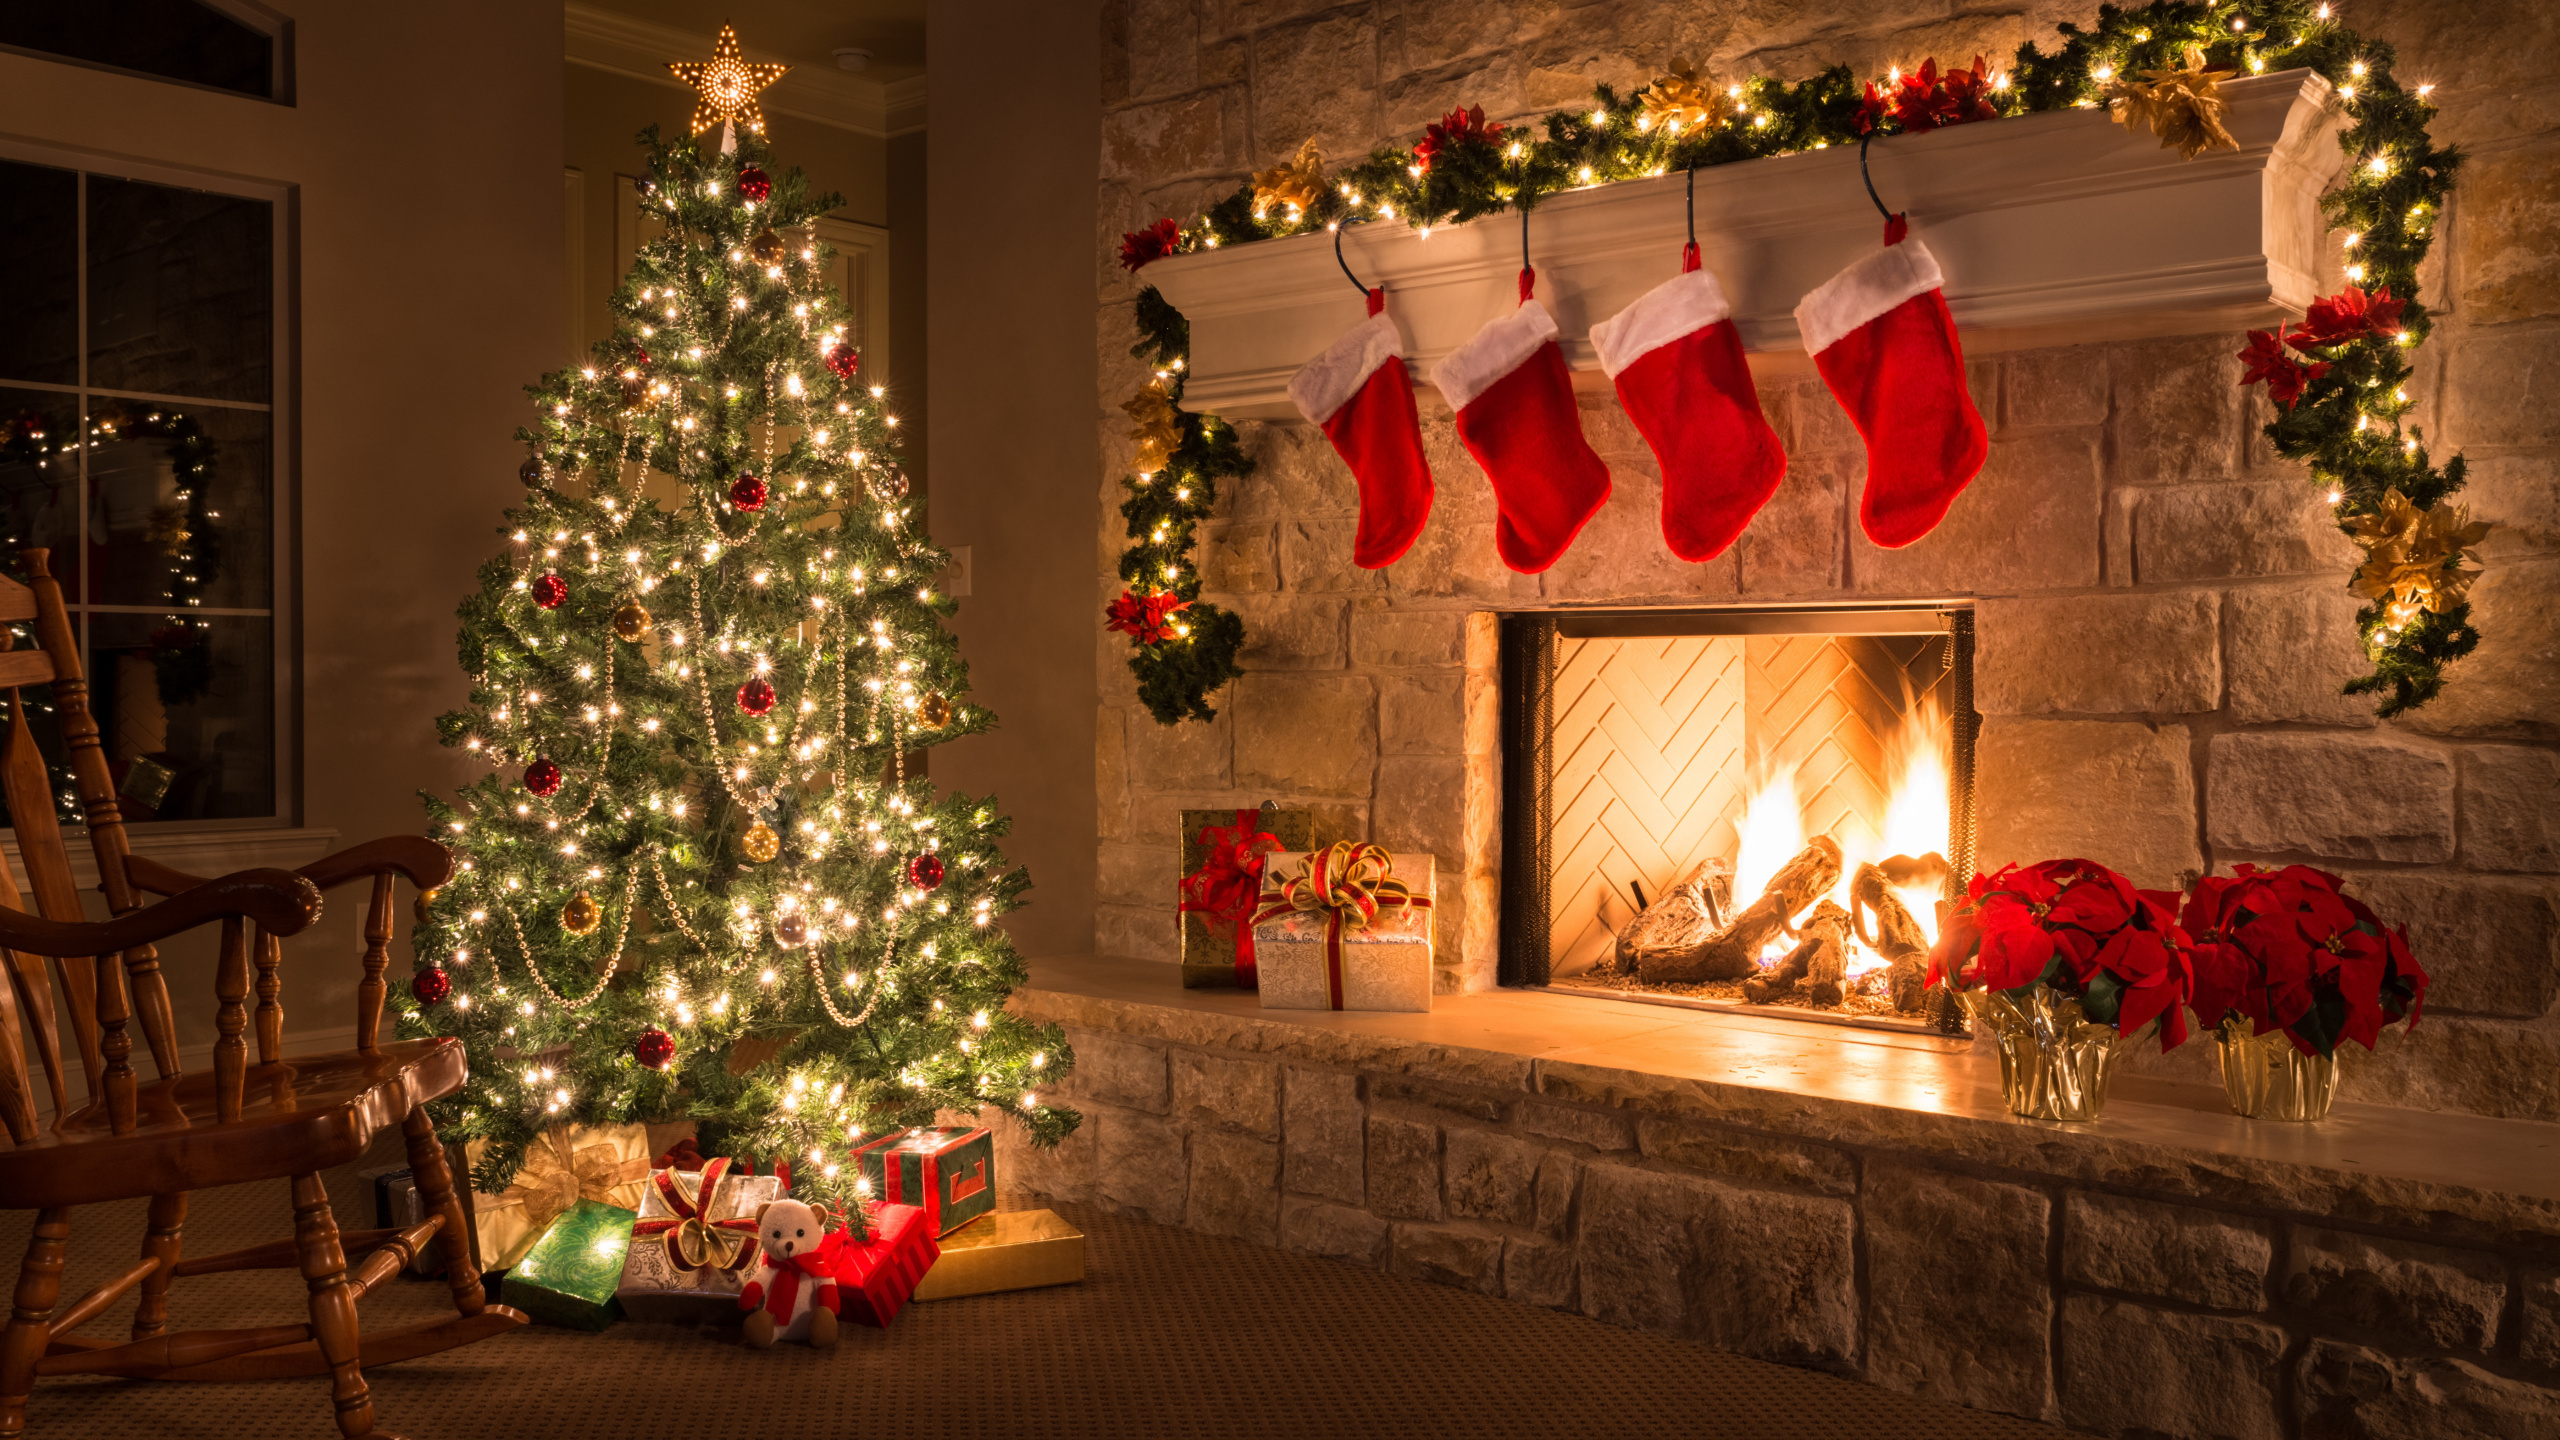 Le Jour De Noël, Décoration de Noël, Arbre de Noël, Maison, Les Lumières de Noël. Wallpaper in 2560x1440 Resolution